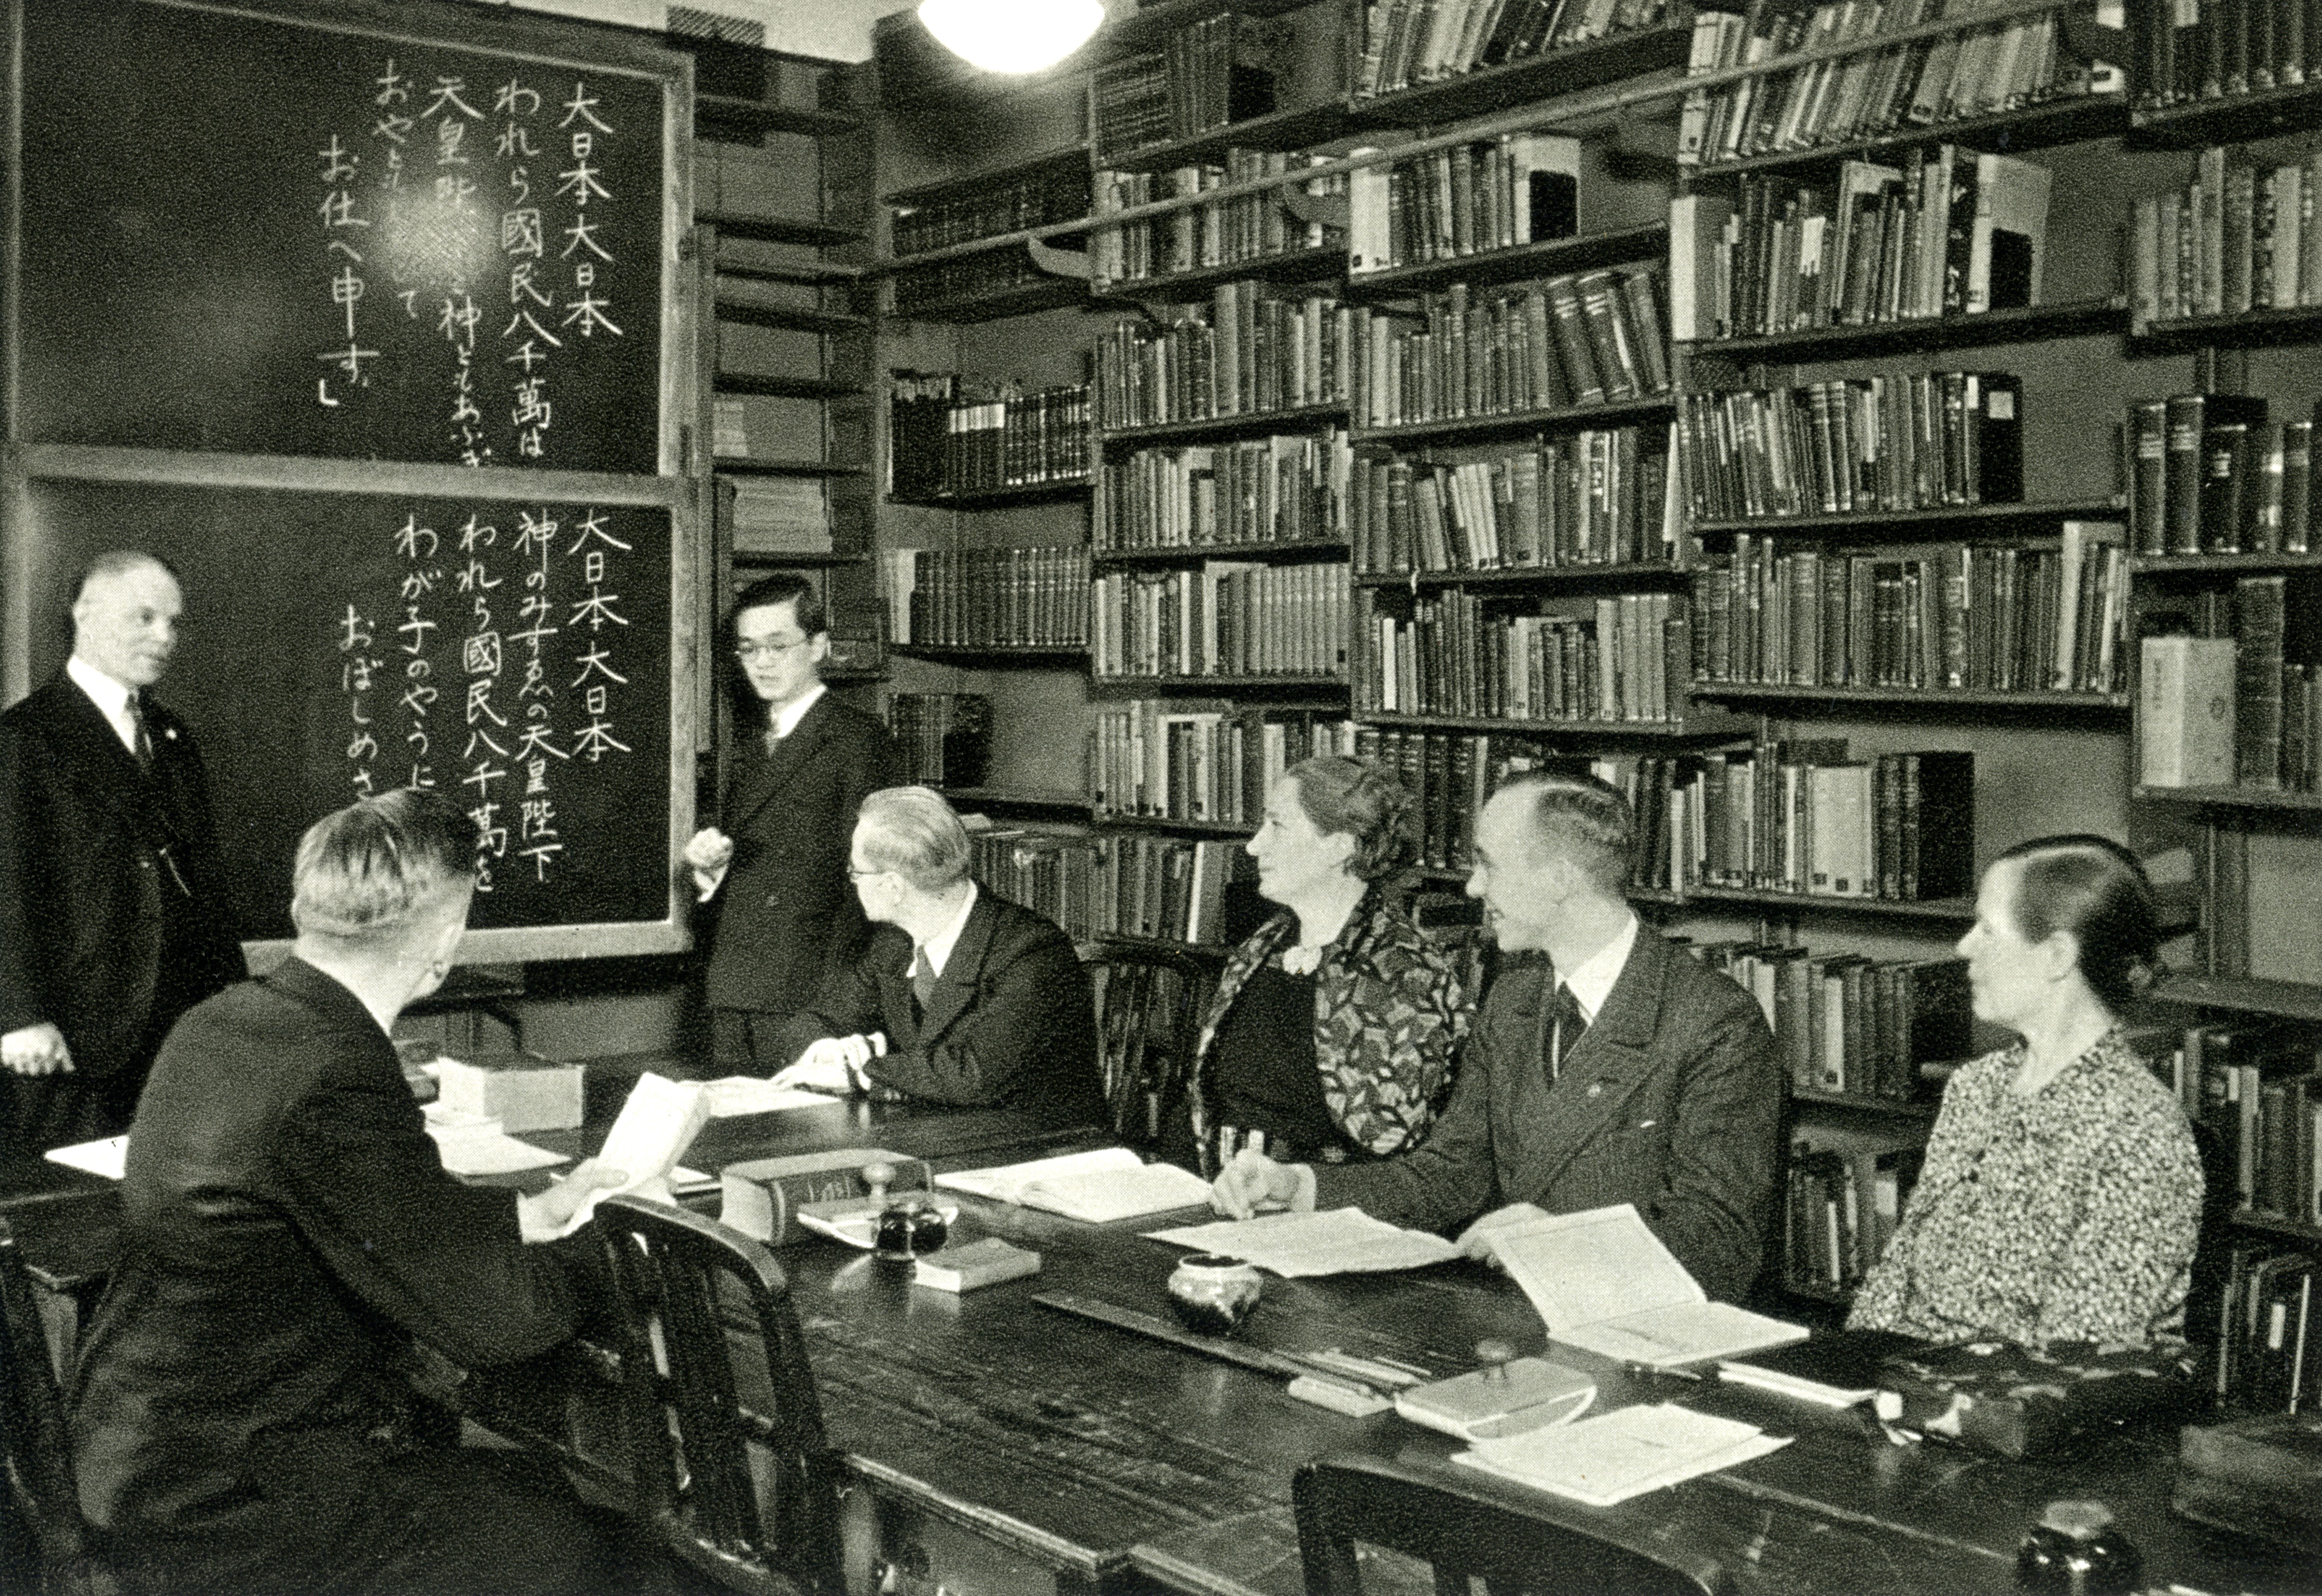 Wilhelm Gundert (left) teaching a class, ca. 1940